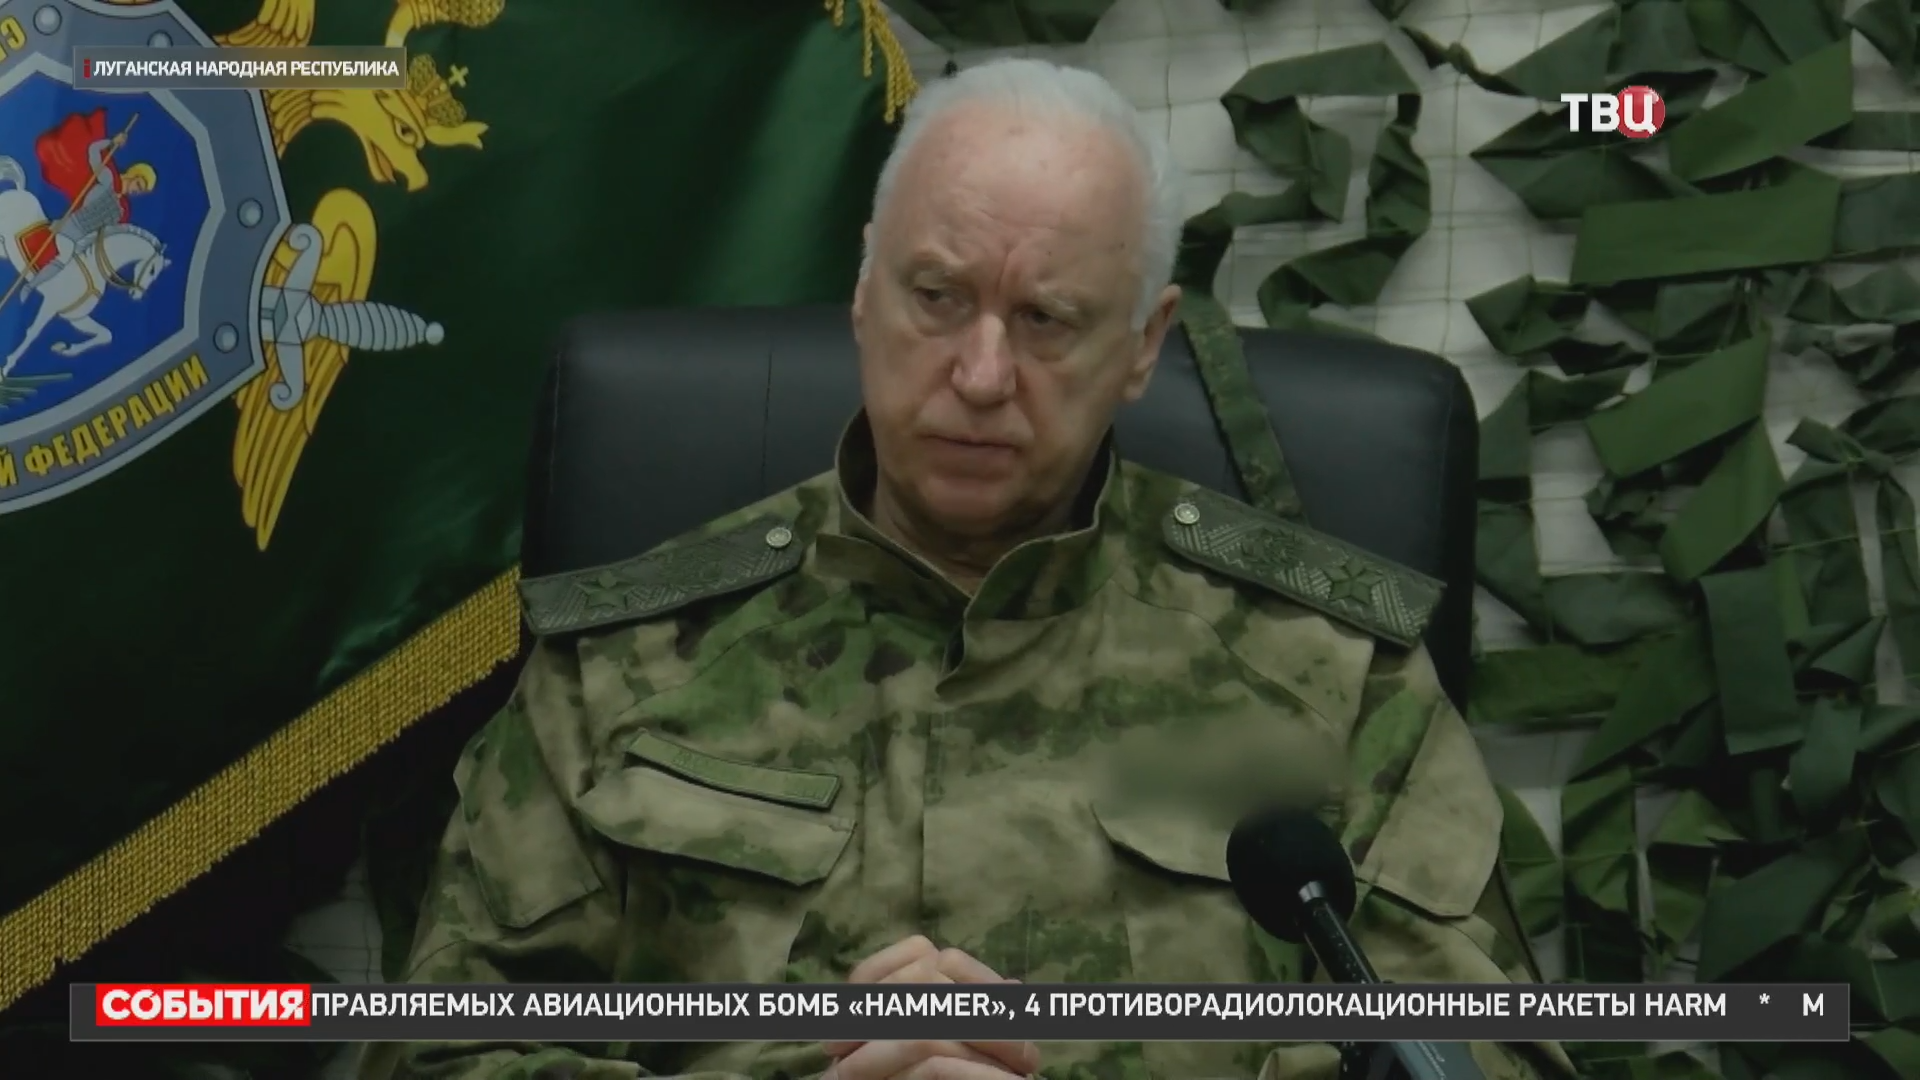 СКР заочно предъявил обвинение экс-замминистра обороны Украины / События на ТВЦ